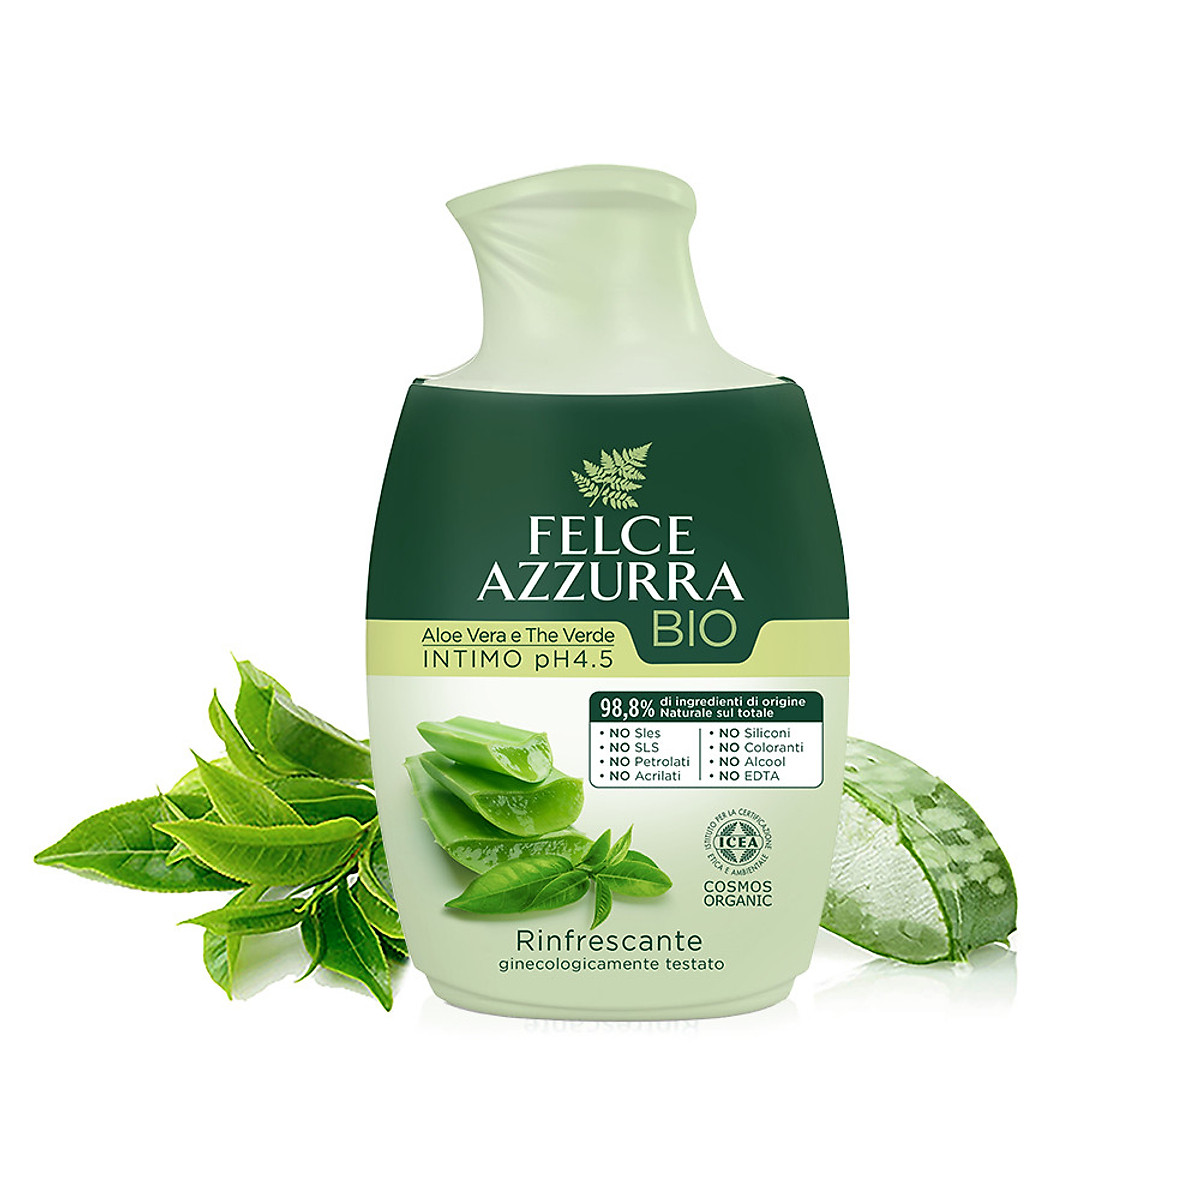 Cùng tận hưởng cảm giác sạch sẽ tự nhiên với dung dịch vệ sinh phụ nữ hữu cơ Felce Azzurra Ý. Với sự kết hợp hoàn hảo từ thành phần hữu cơ và chiết xuất từ thiên nhiên, Felce Azzurra đã tạo nên một sản phẩm vệ sinh tuyệt vời.